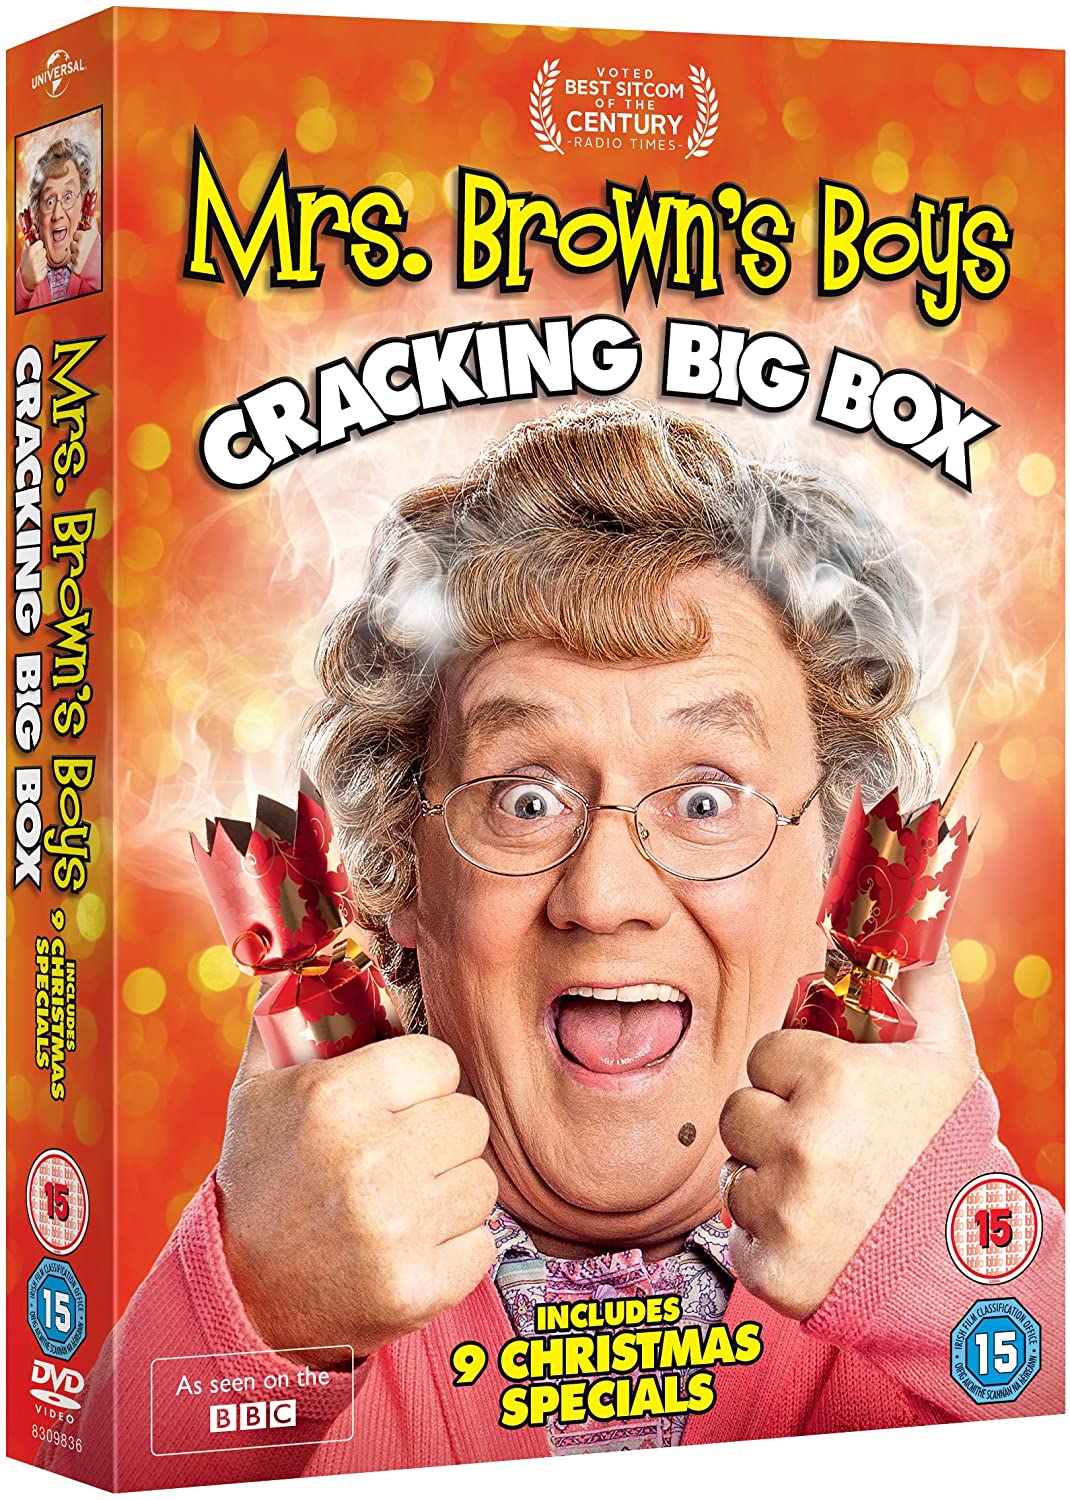 Mrs. Brown’s Boys: Cracking Big Box [2015] - Sitcom [DVD]